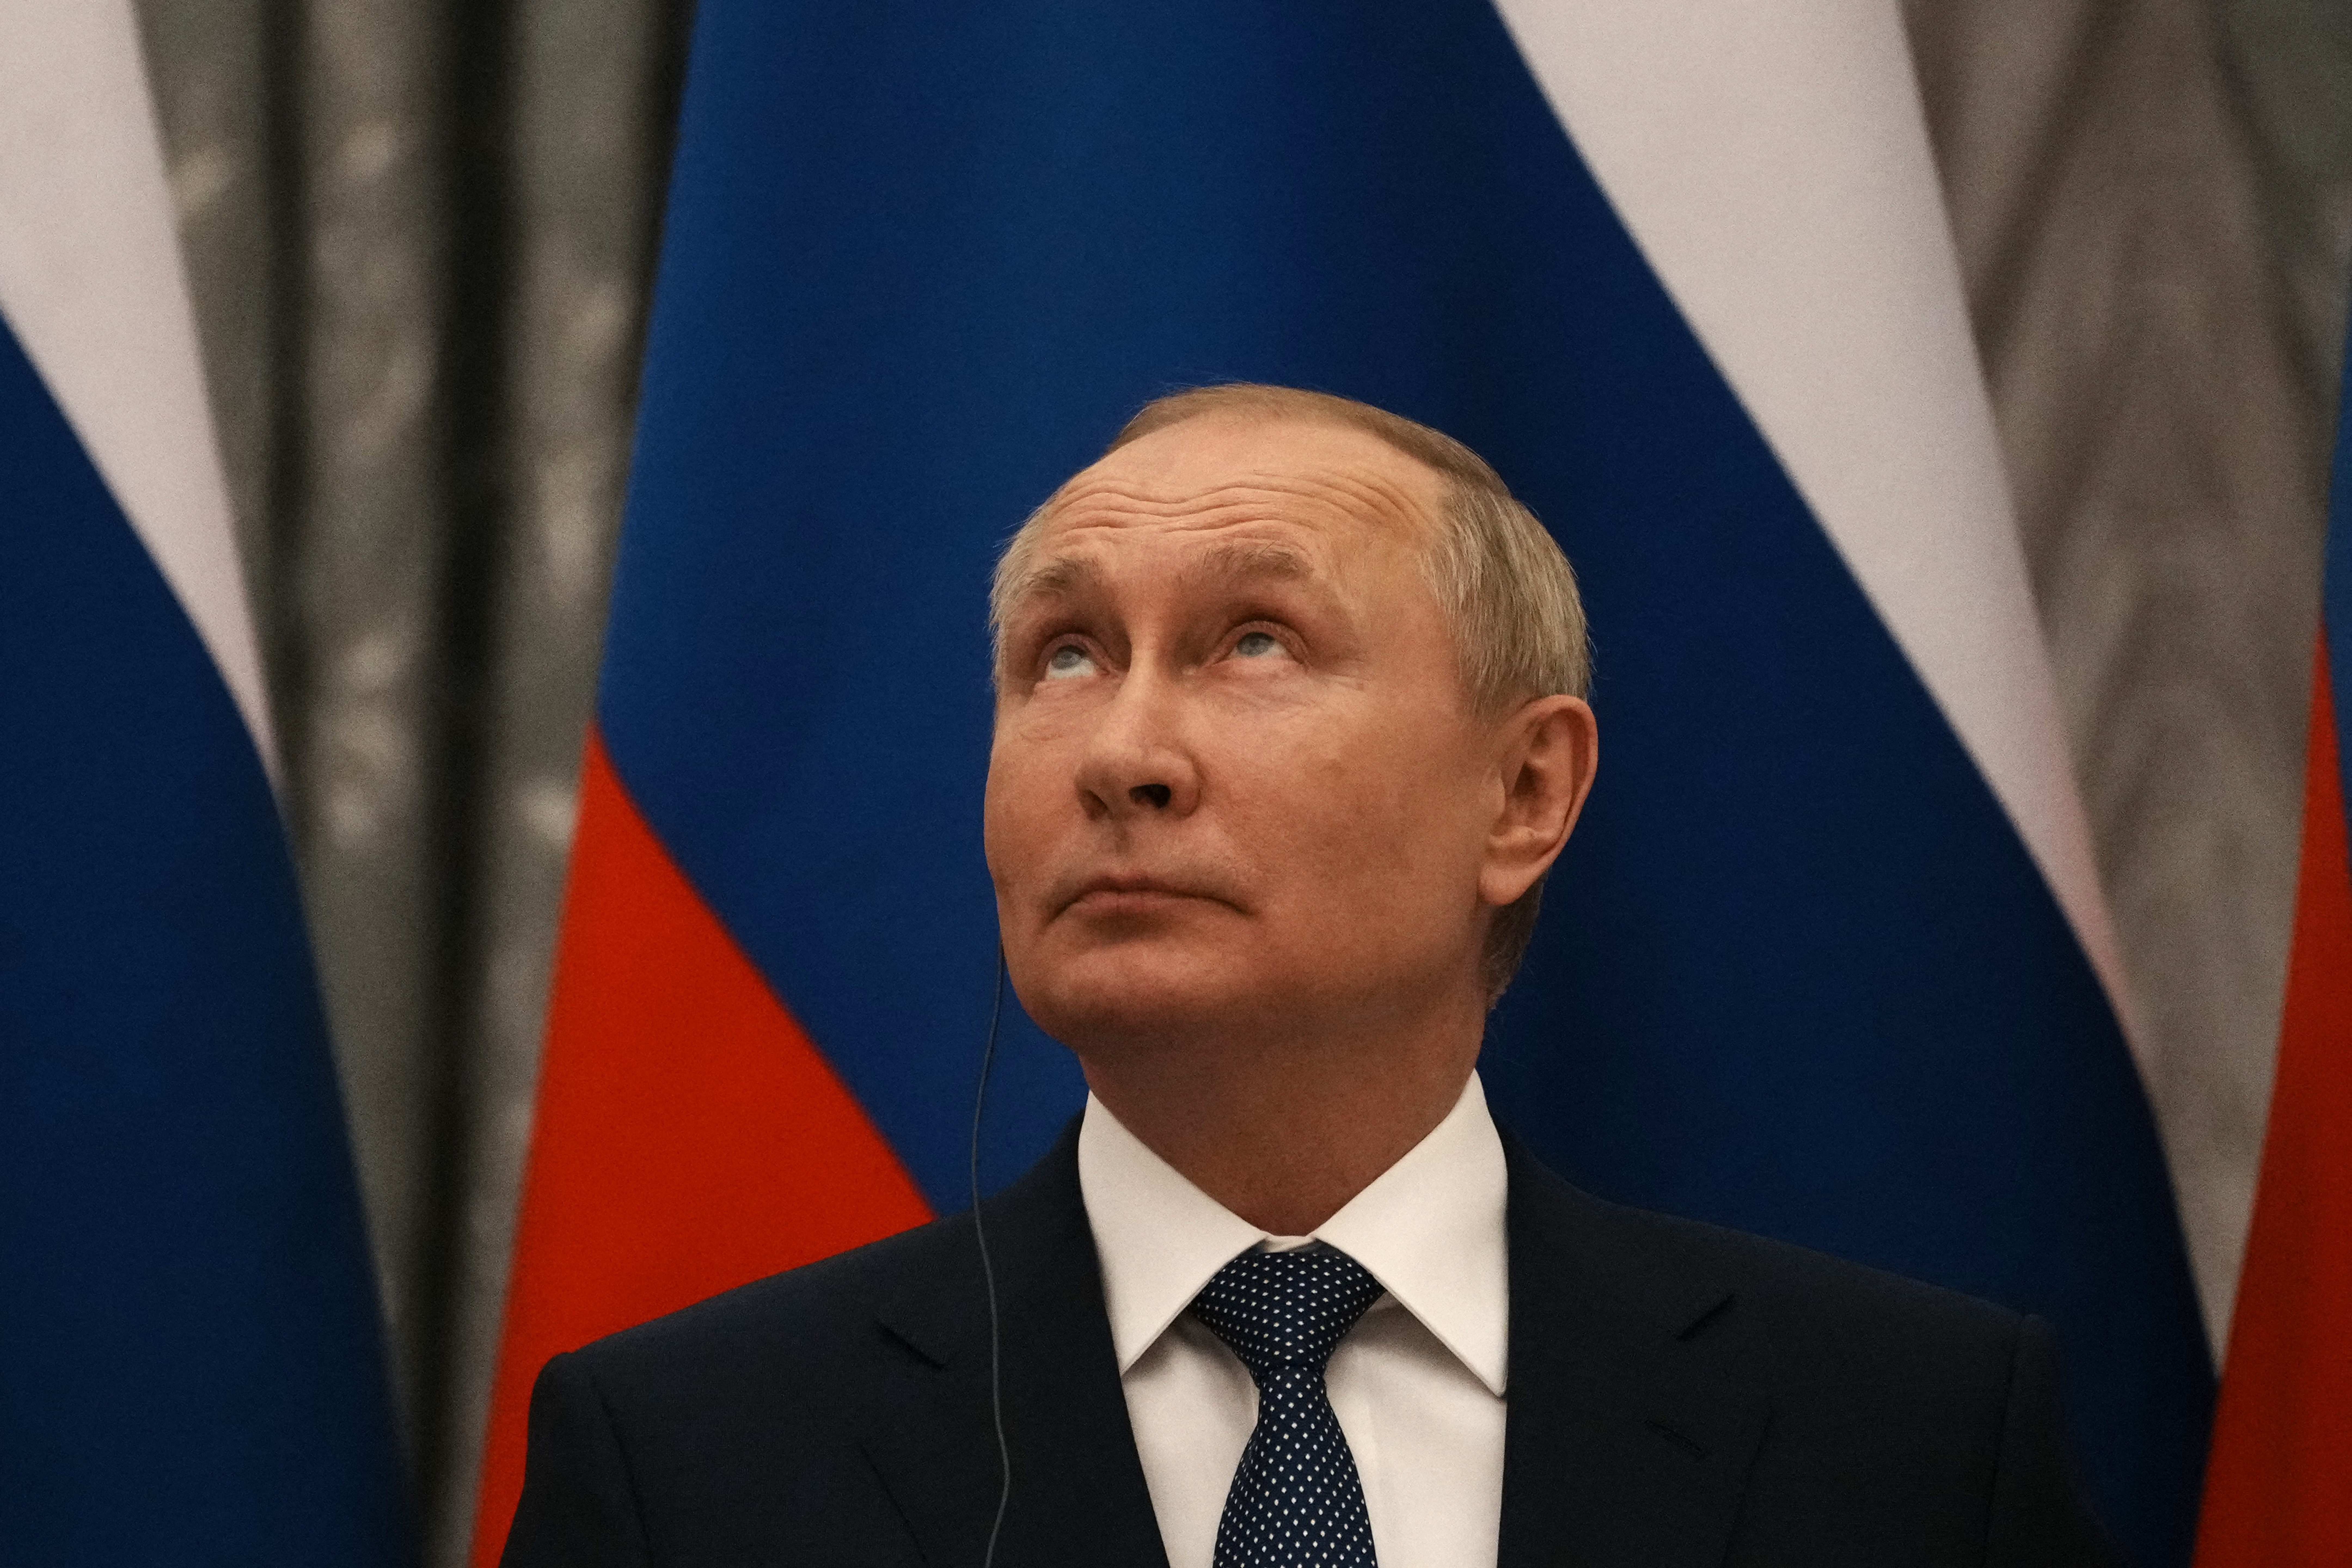 Biztonságpolitikai szakértő szerint Putyin vastagon elszámította magát: "Megtéveszthették közvetlen munkatársai"